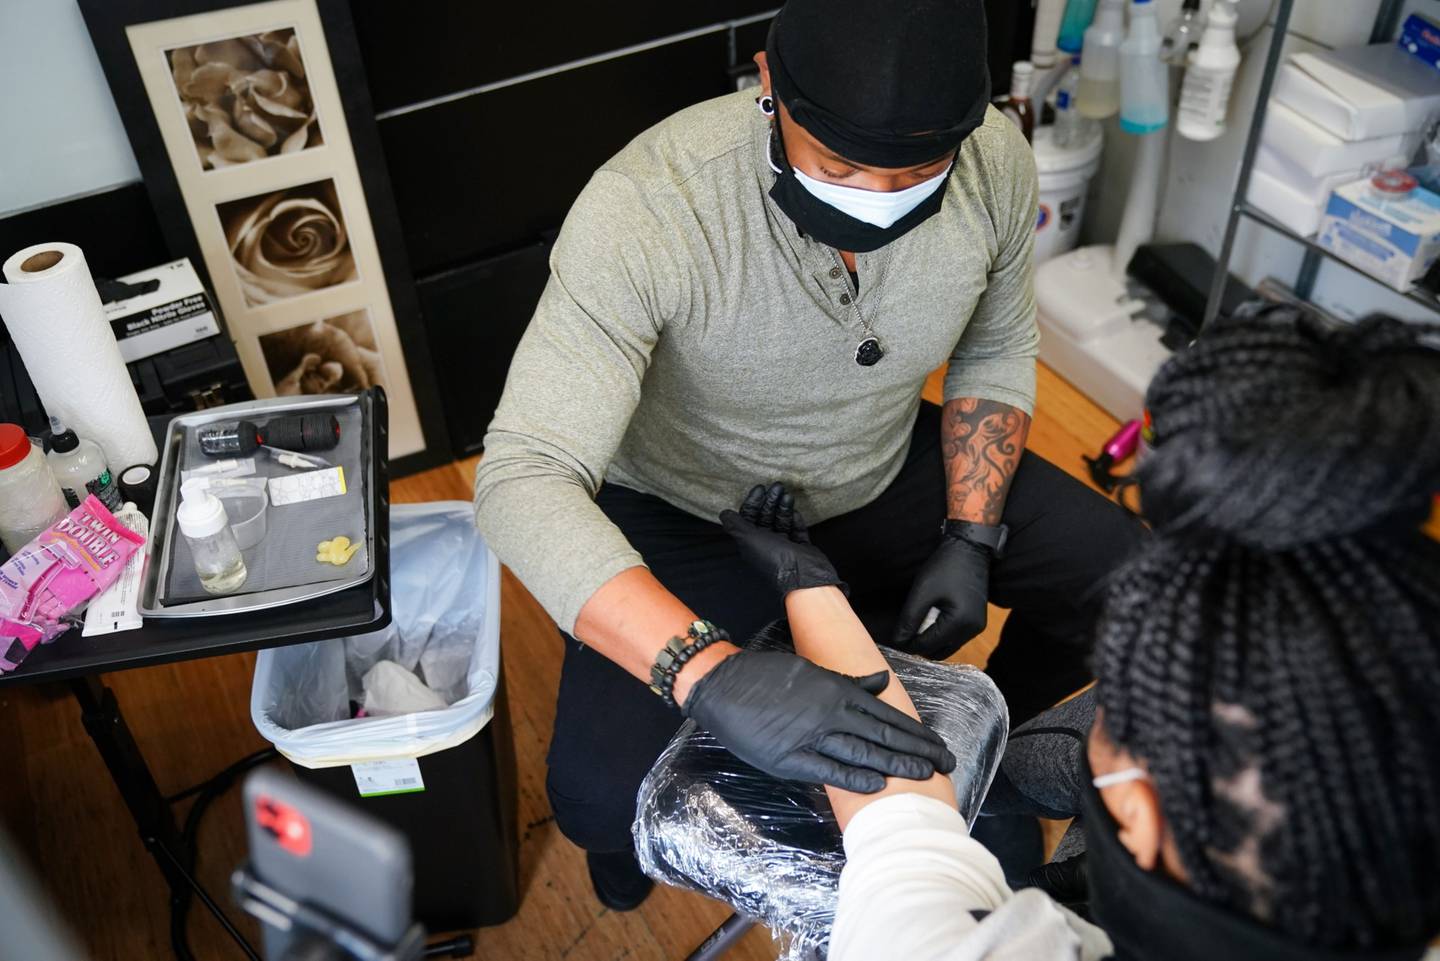 Un artista del tatuaje con una máscara protectora trabaja limpia el brazo de un cliente en un salón de tatuajes en Atlanta, Georgia, Estados Unidos, el viernes 24 de abril de 2020. Fotógrafo: Elijah Nouvelage/Bloomberg